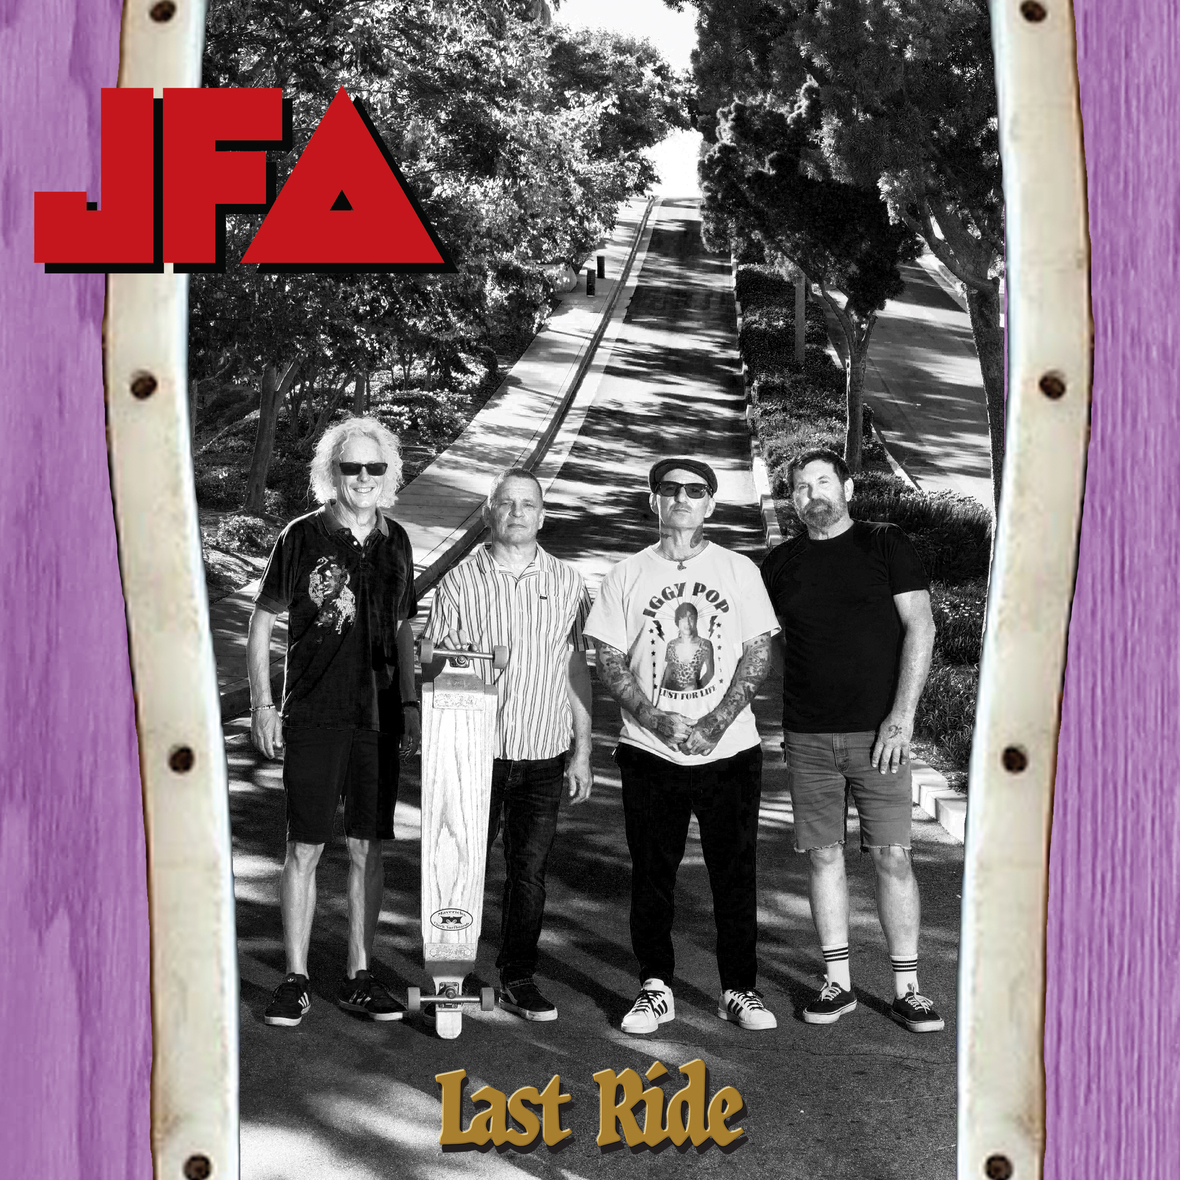 OG Skate Rock Band JFA Is Back